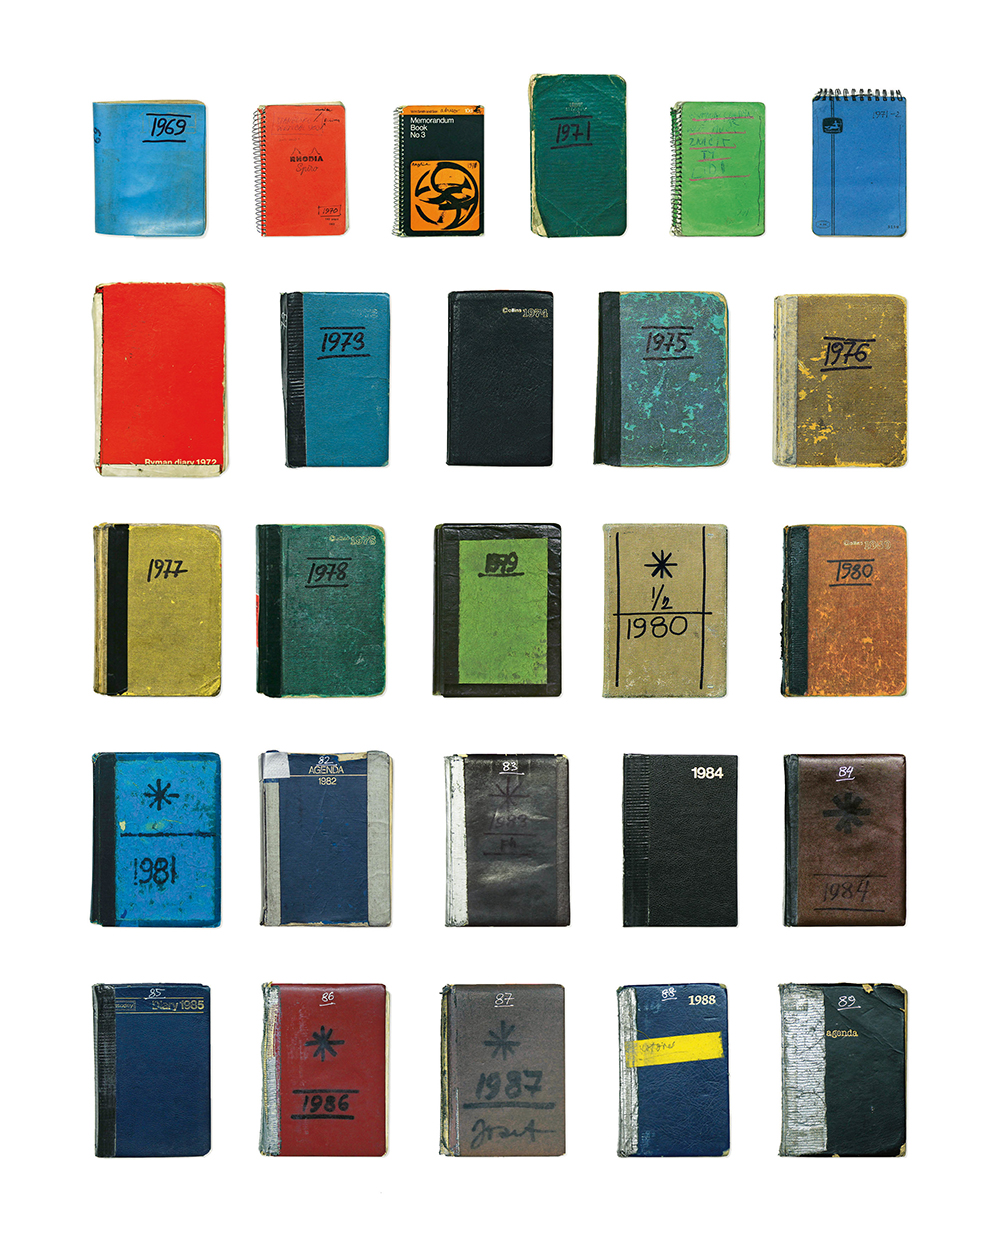 Covers of JK's diaries